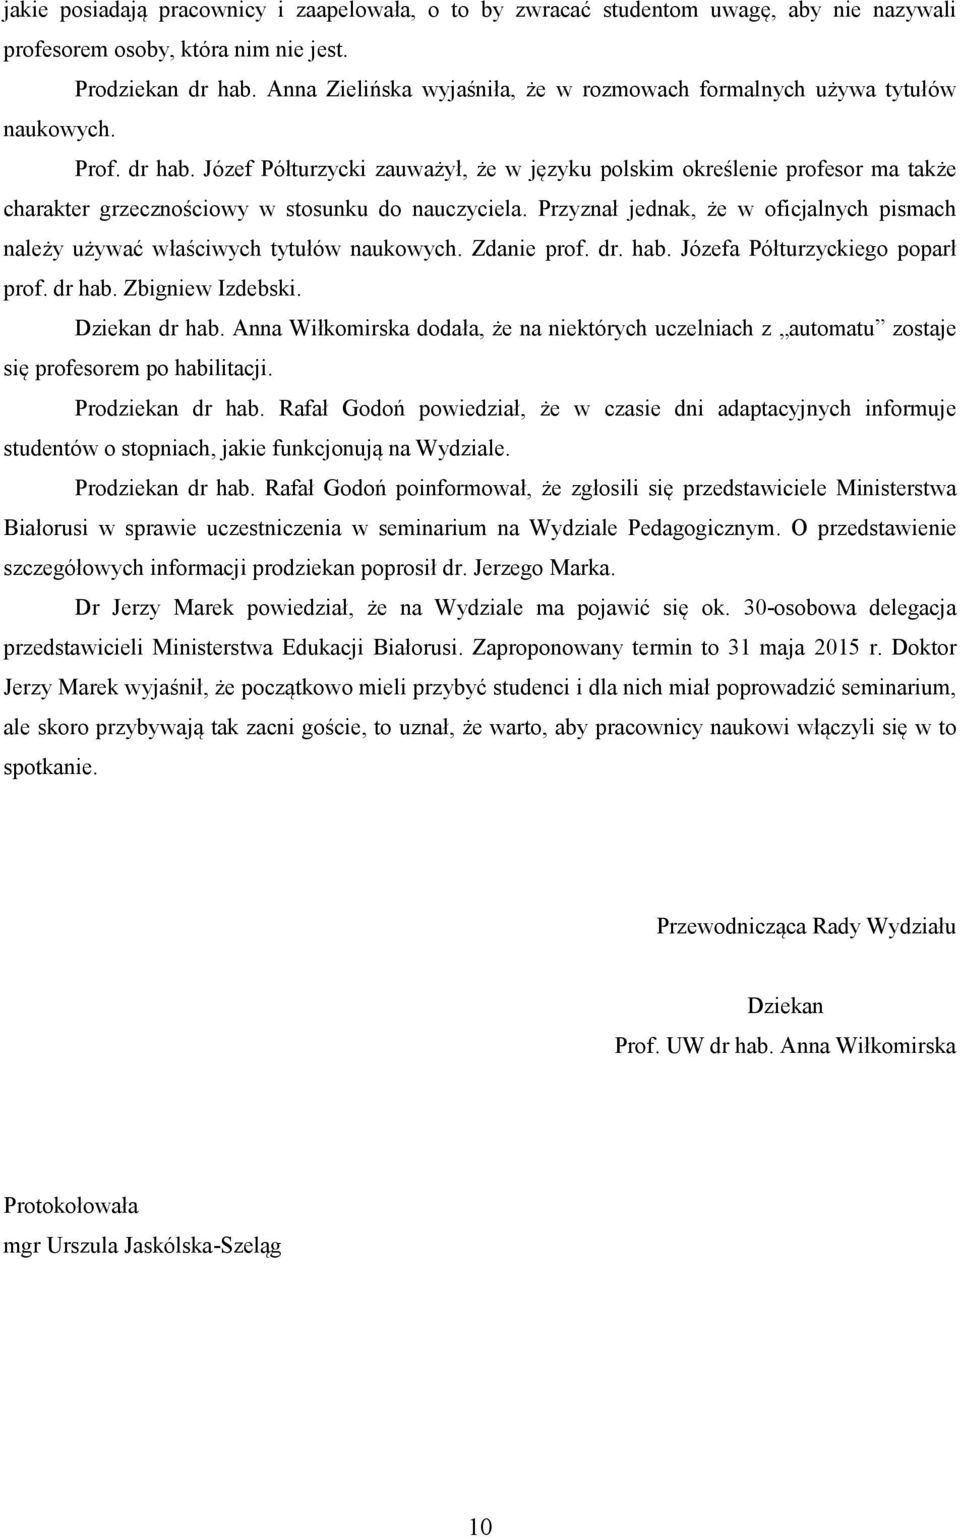 Józef Półturzycki zauważył, że w języku polskim określenie profesor ma także charakter grzecznościowy w stosunku do nauczyciela.